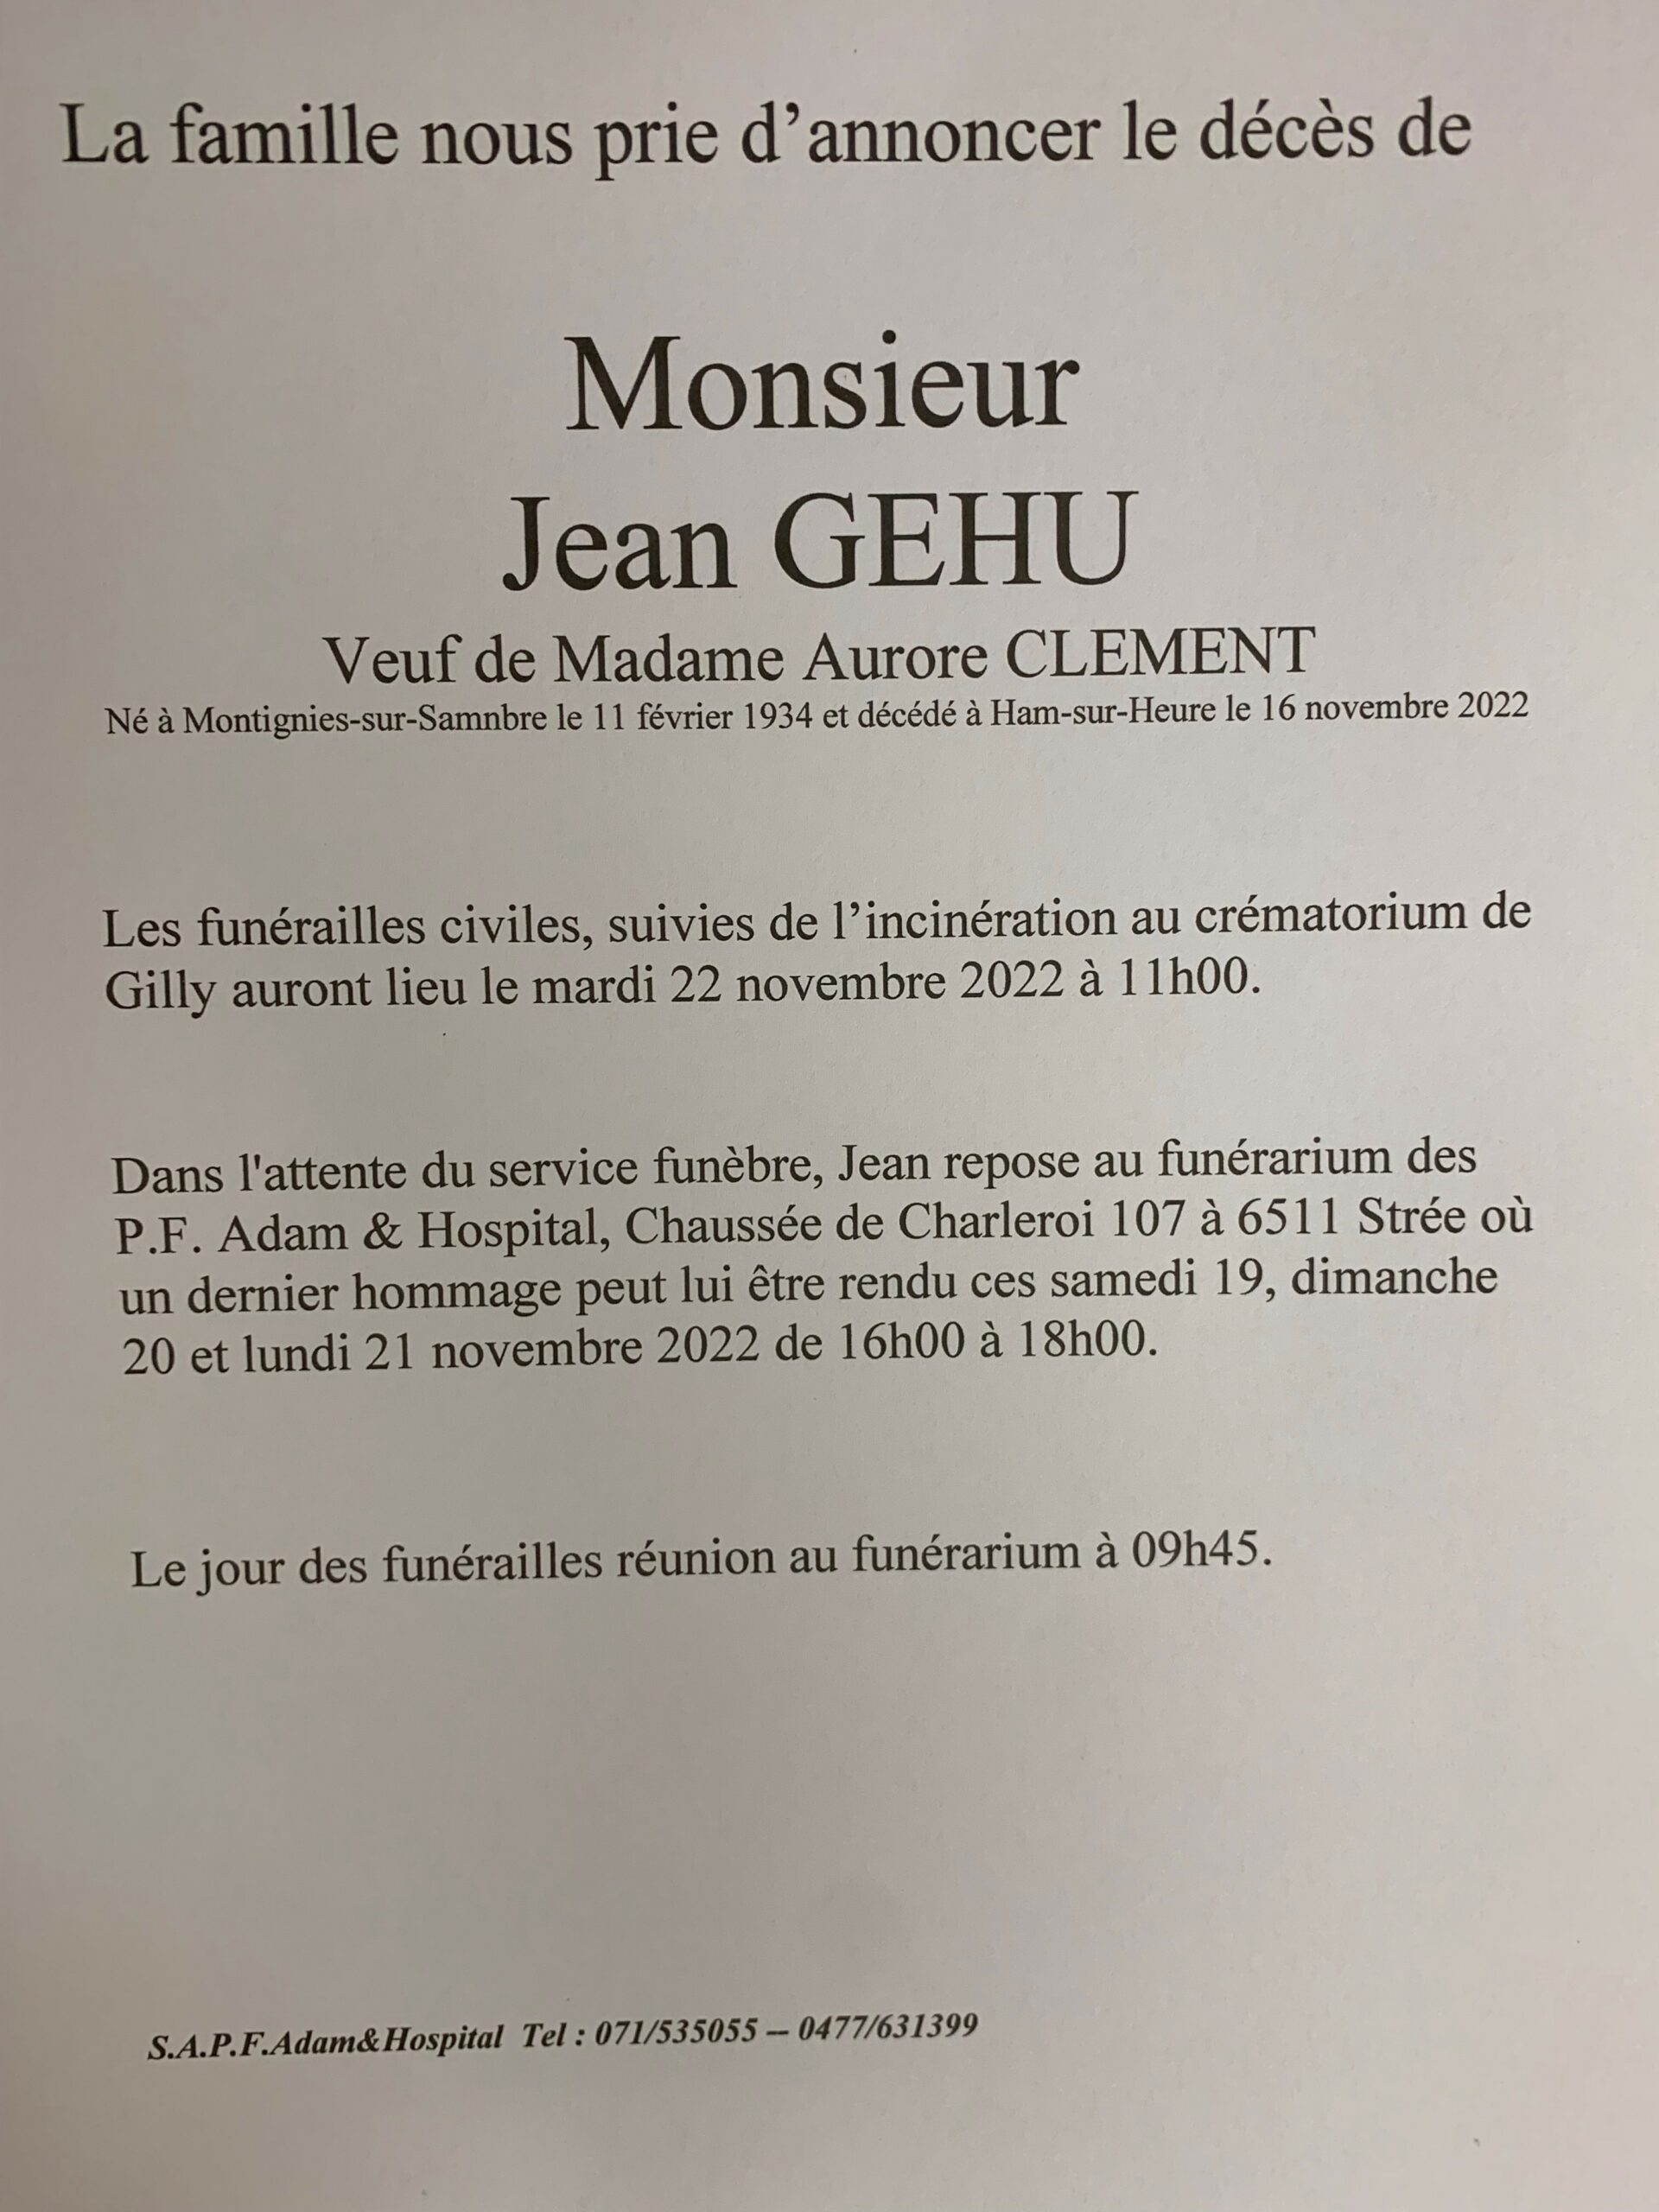 Monsieur Jean GEHU scaled | Funérailles Adam Hospital